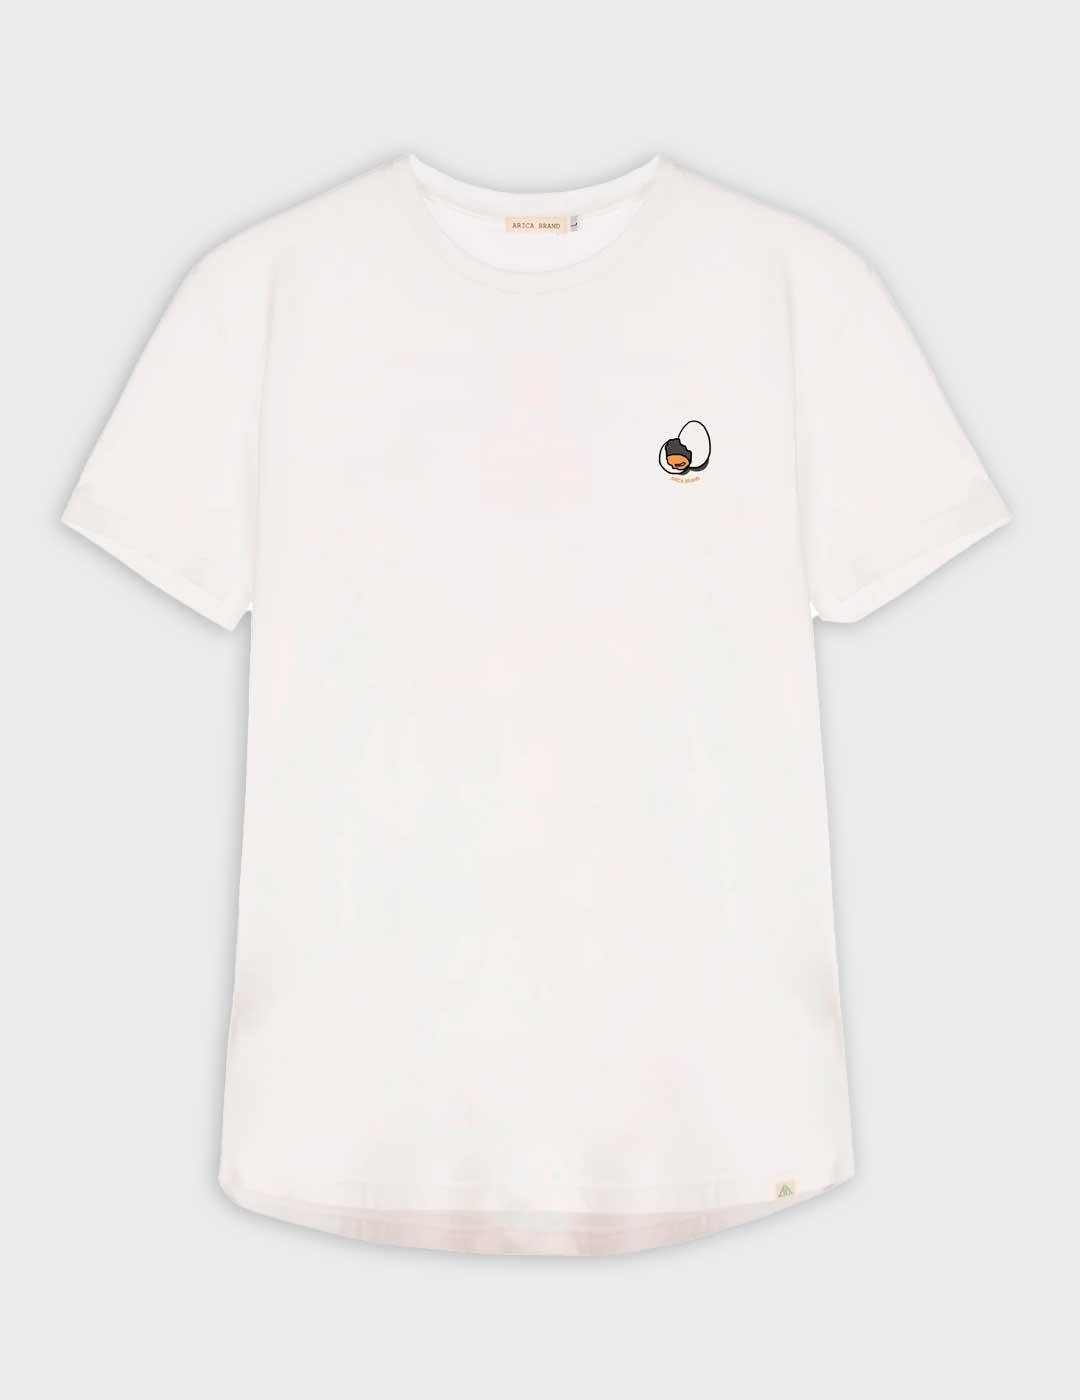 Camiseta Arica Brand Carbonara blanca unisex